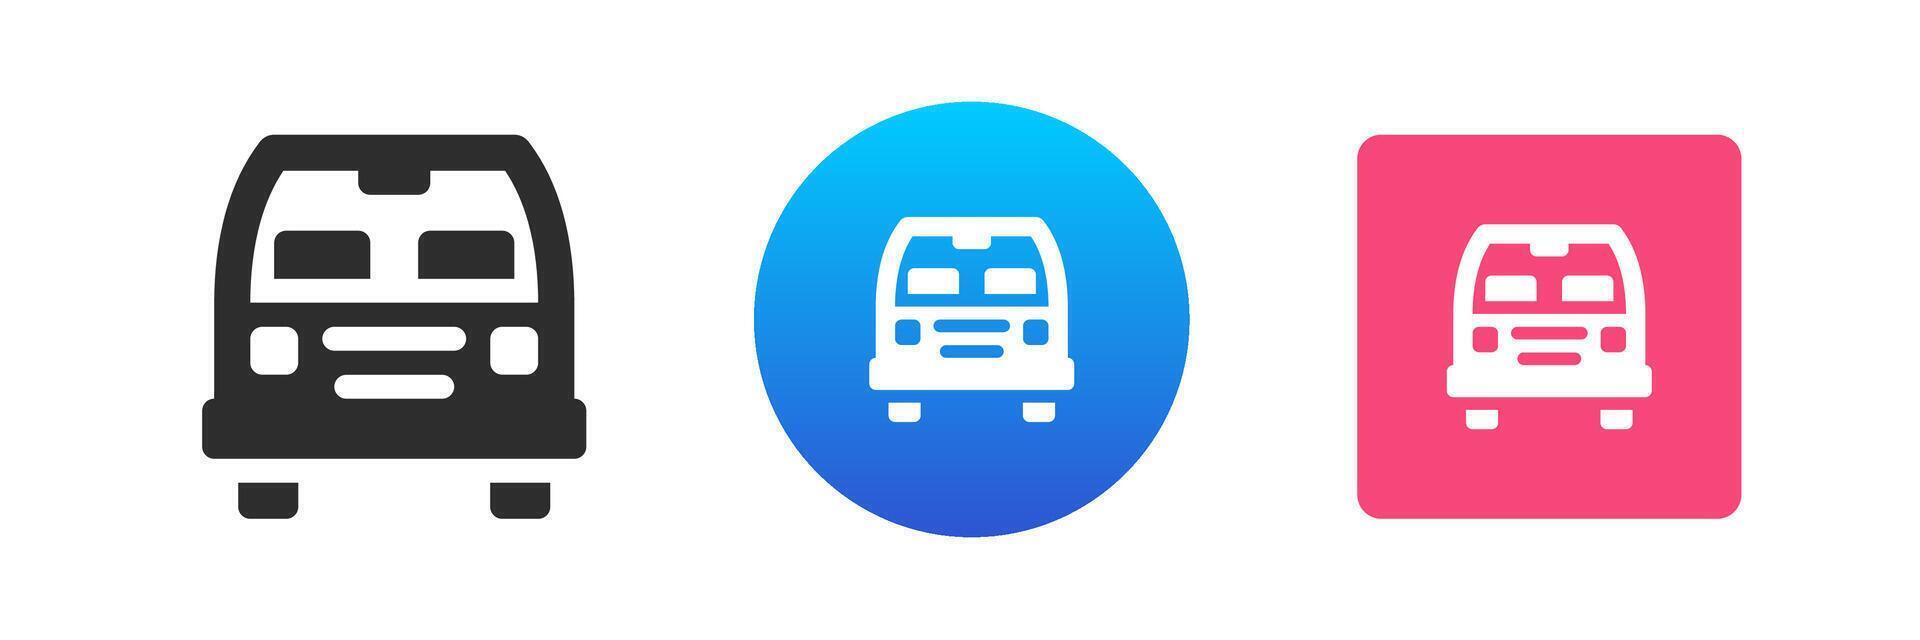 Bus automobile commercial public urban travel transportation navigation service icon set flat vector